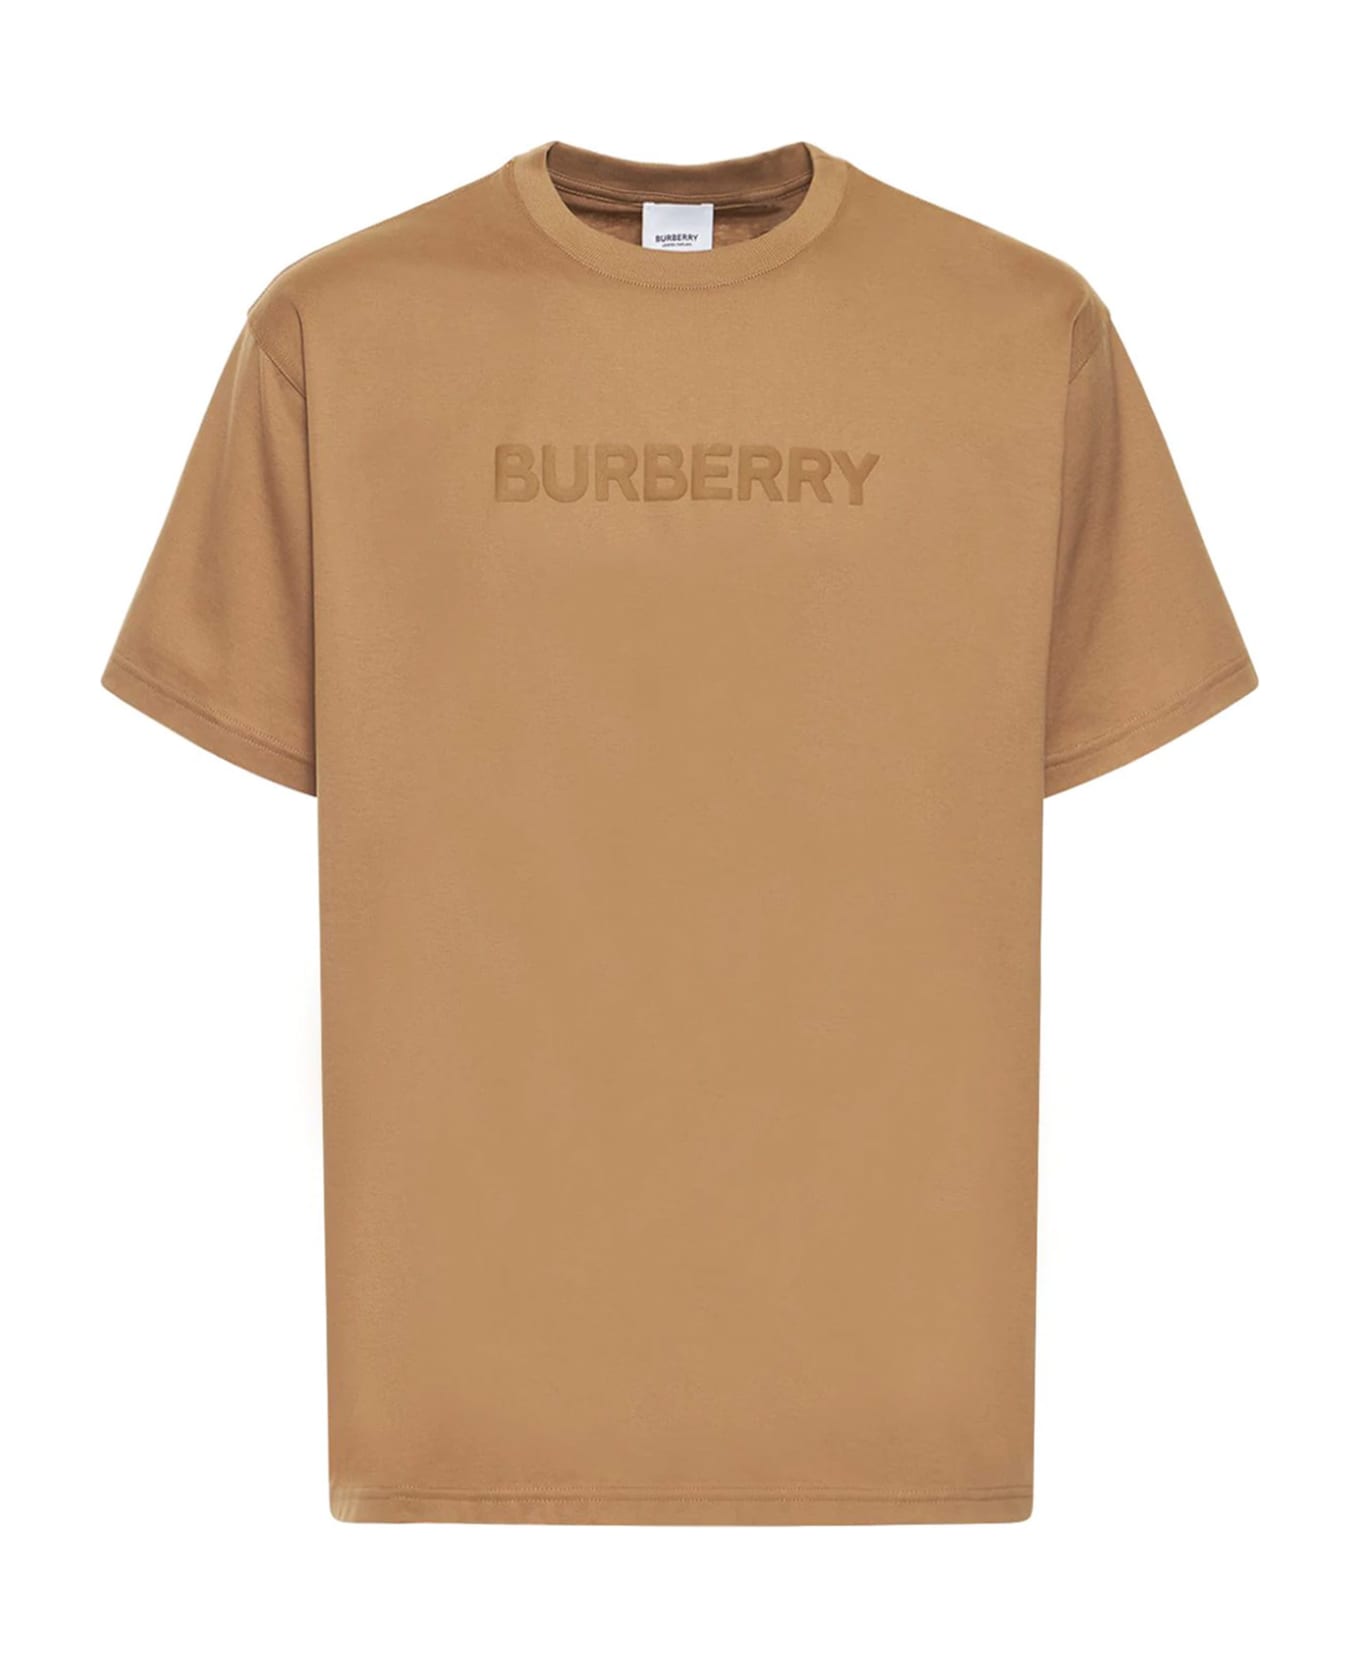 Burberry T-shirt - BEIGE